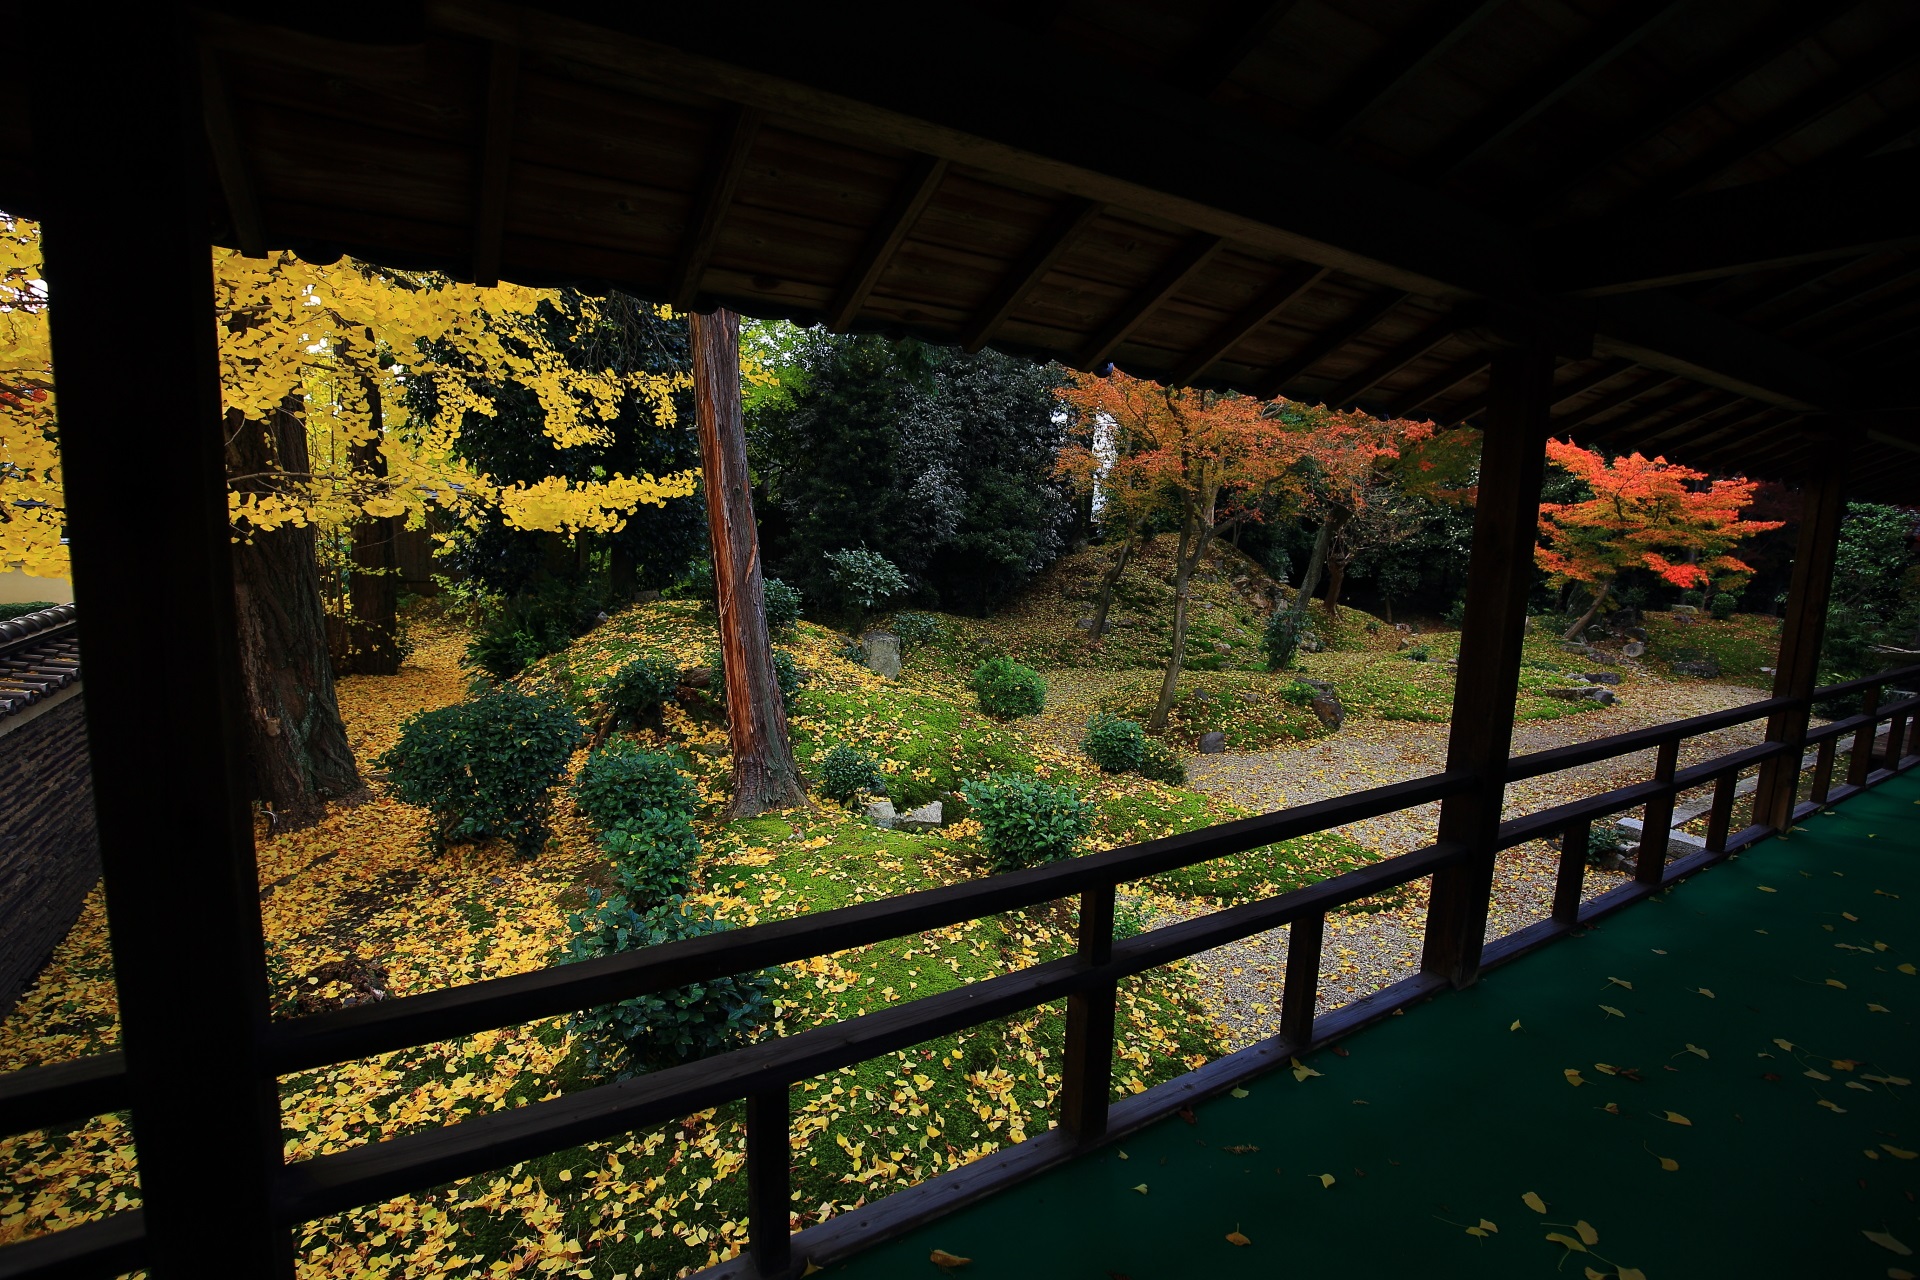 立本寺の本堂と客殿の間の渡り廊下から眺めた紅葉と銀杏の龍華苑